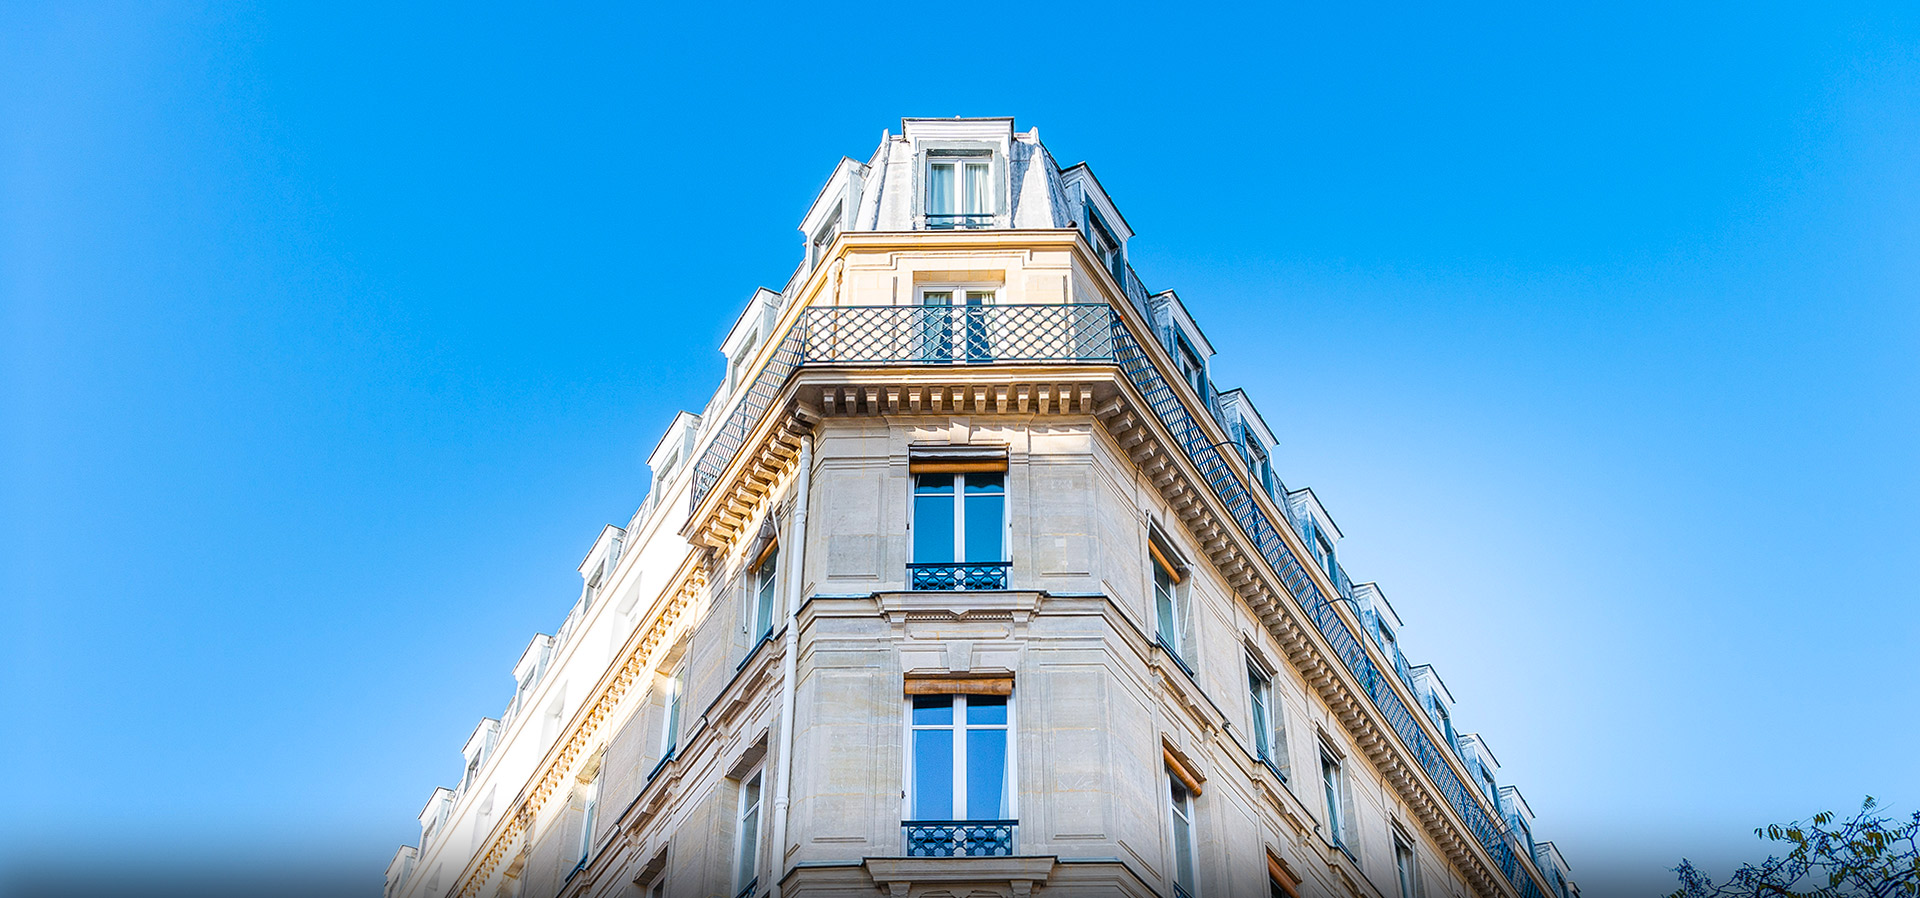 FRAQUELLI Montreuil | Entreprise du bâtiment pour la réalisation et rénovation de cage d'escalier, sols, hall d'immeuble et façades